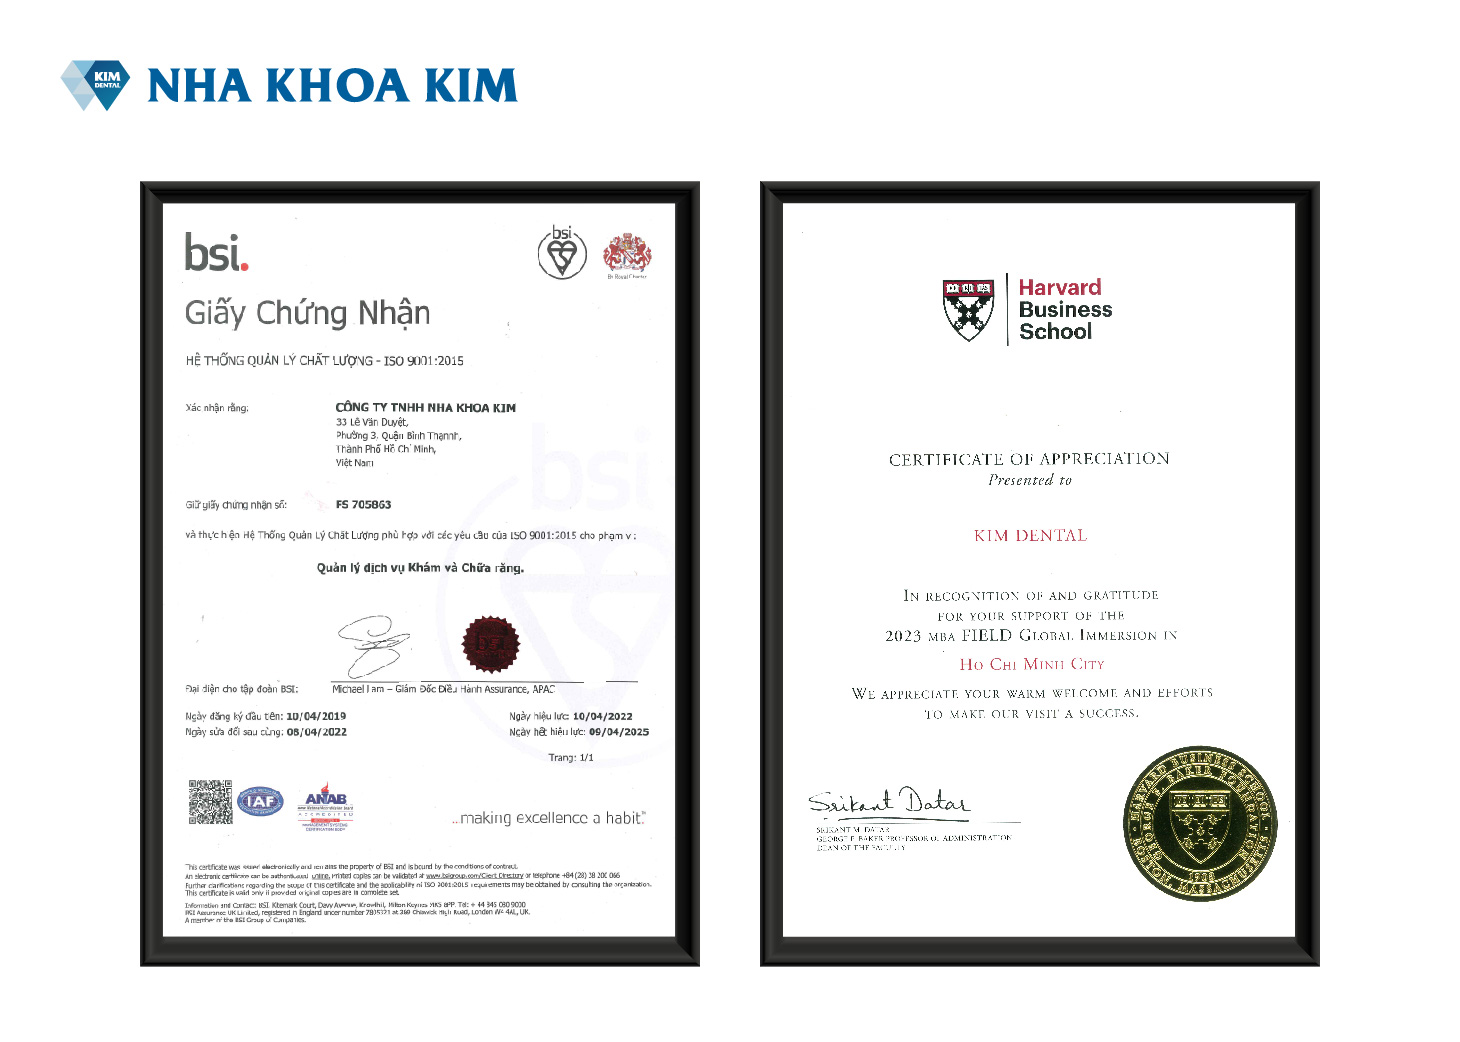 Giấy chứng nhận chất lượng ISO 9001:2015 của Nha Khoa Kim